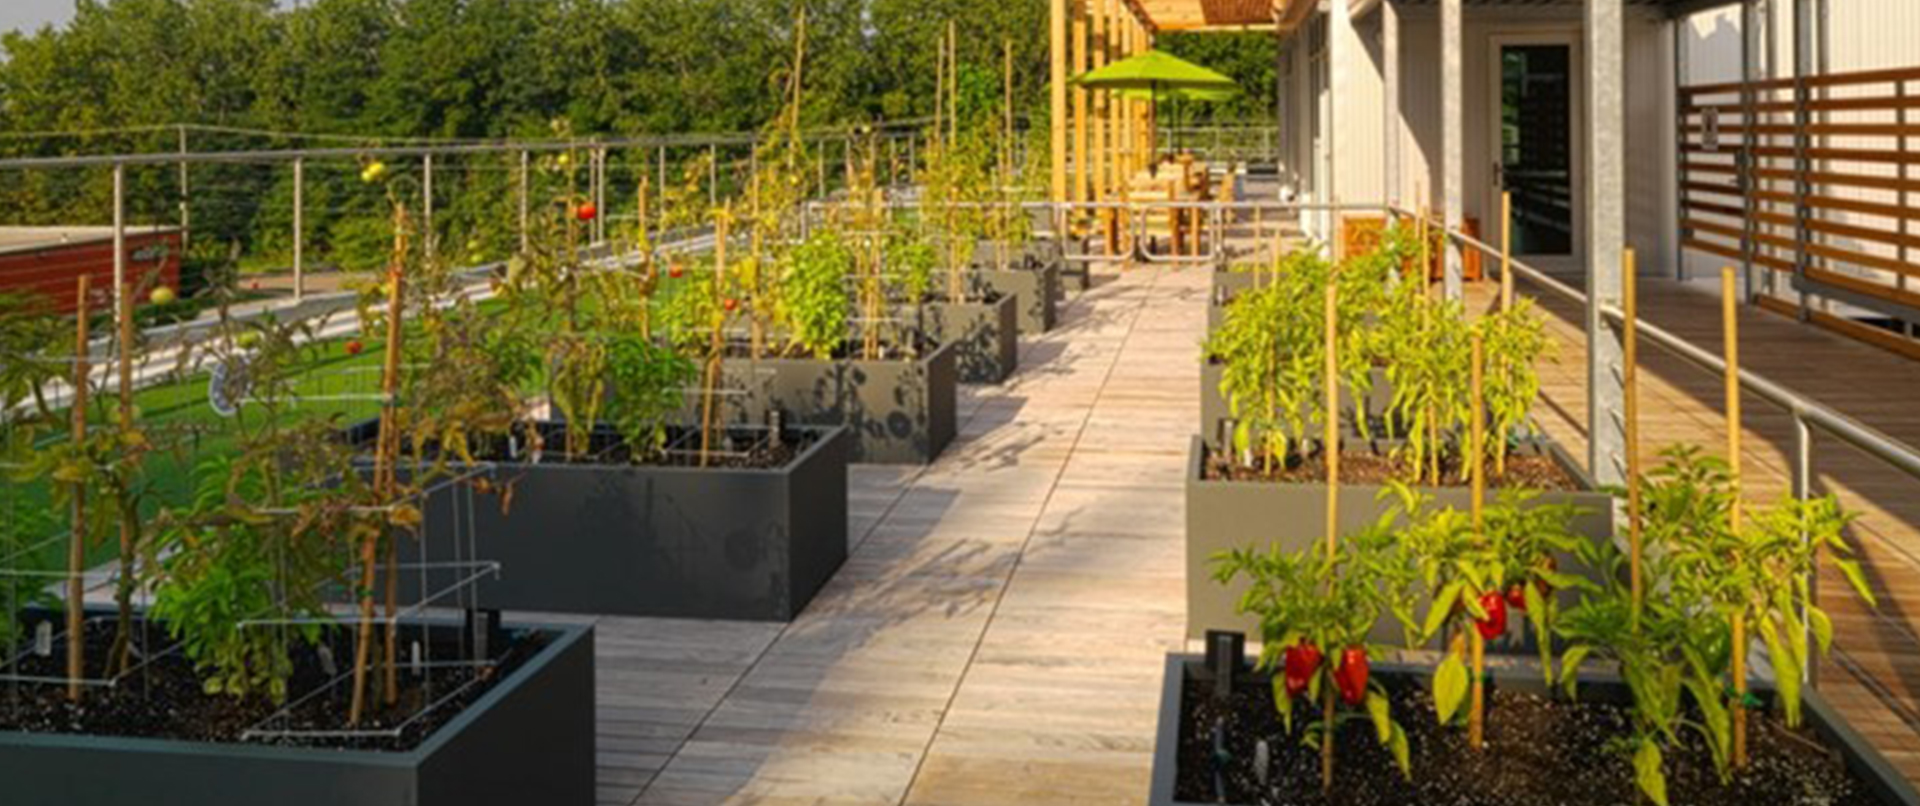 Rooftop Deck with Garden